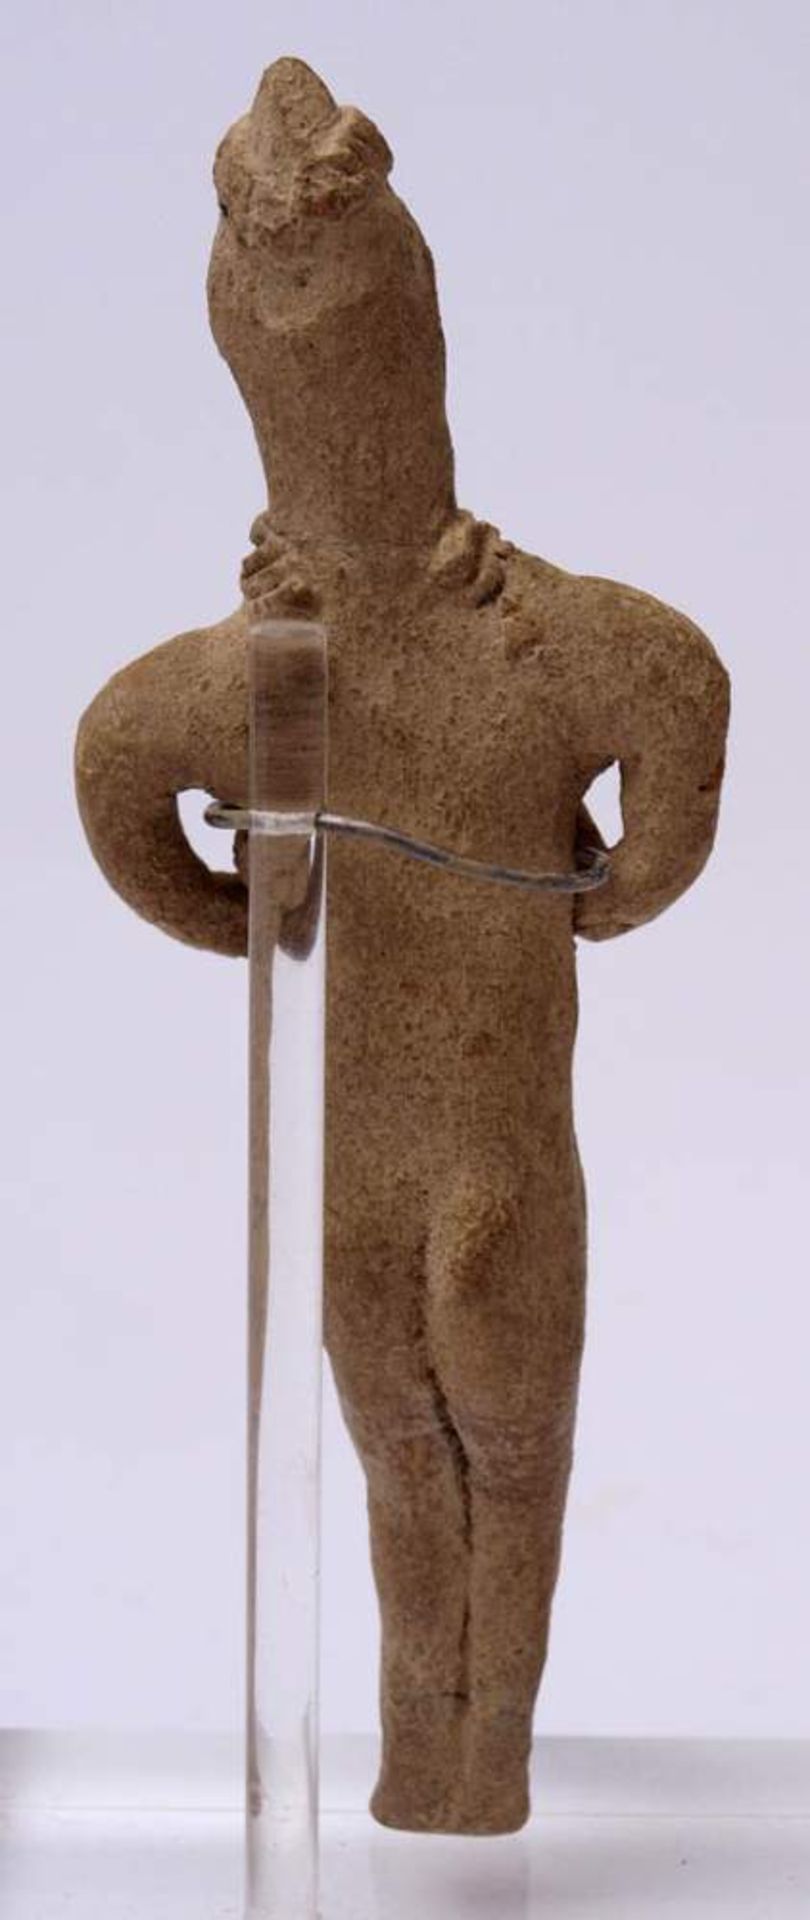 Syro-hethitisches Idol mit Hund, wohl frühes 2. Jahrtausend v.Chr.Weißer Ton. H.12,5cm bzw. 7x4,6cm. - Bild 11 aus 12